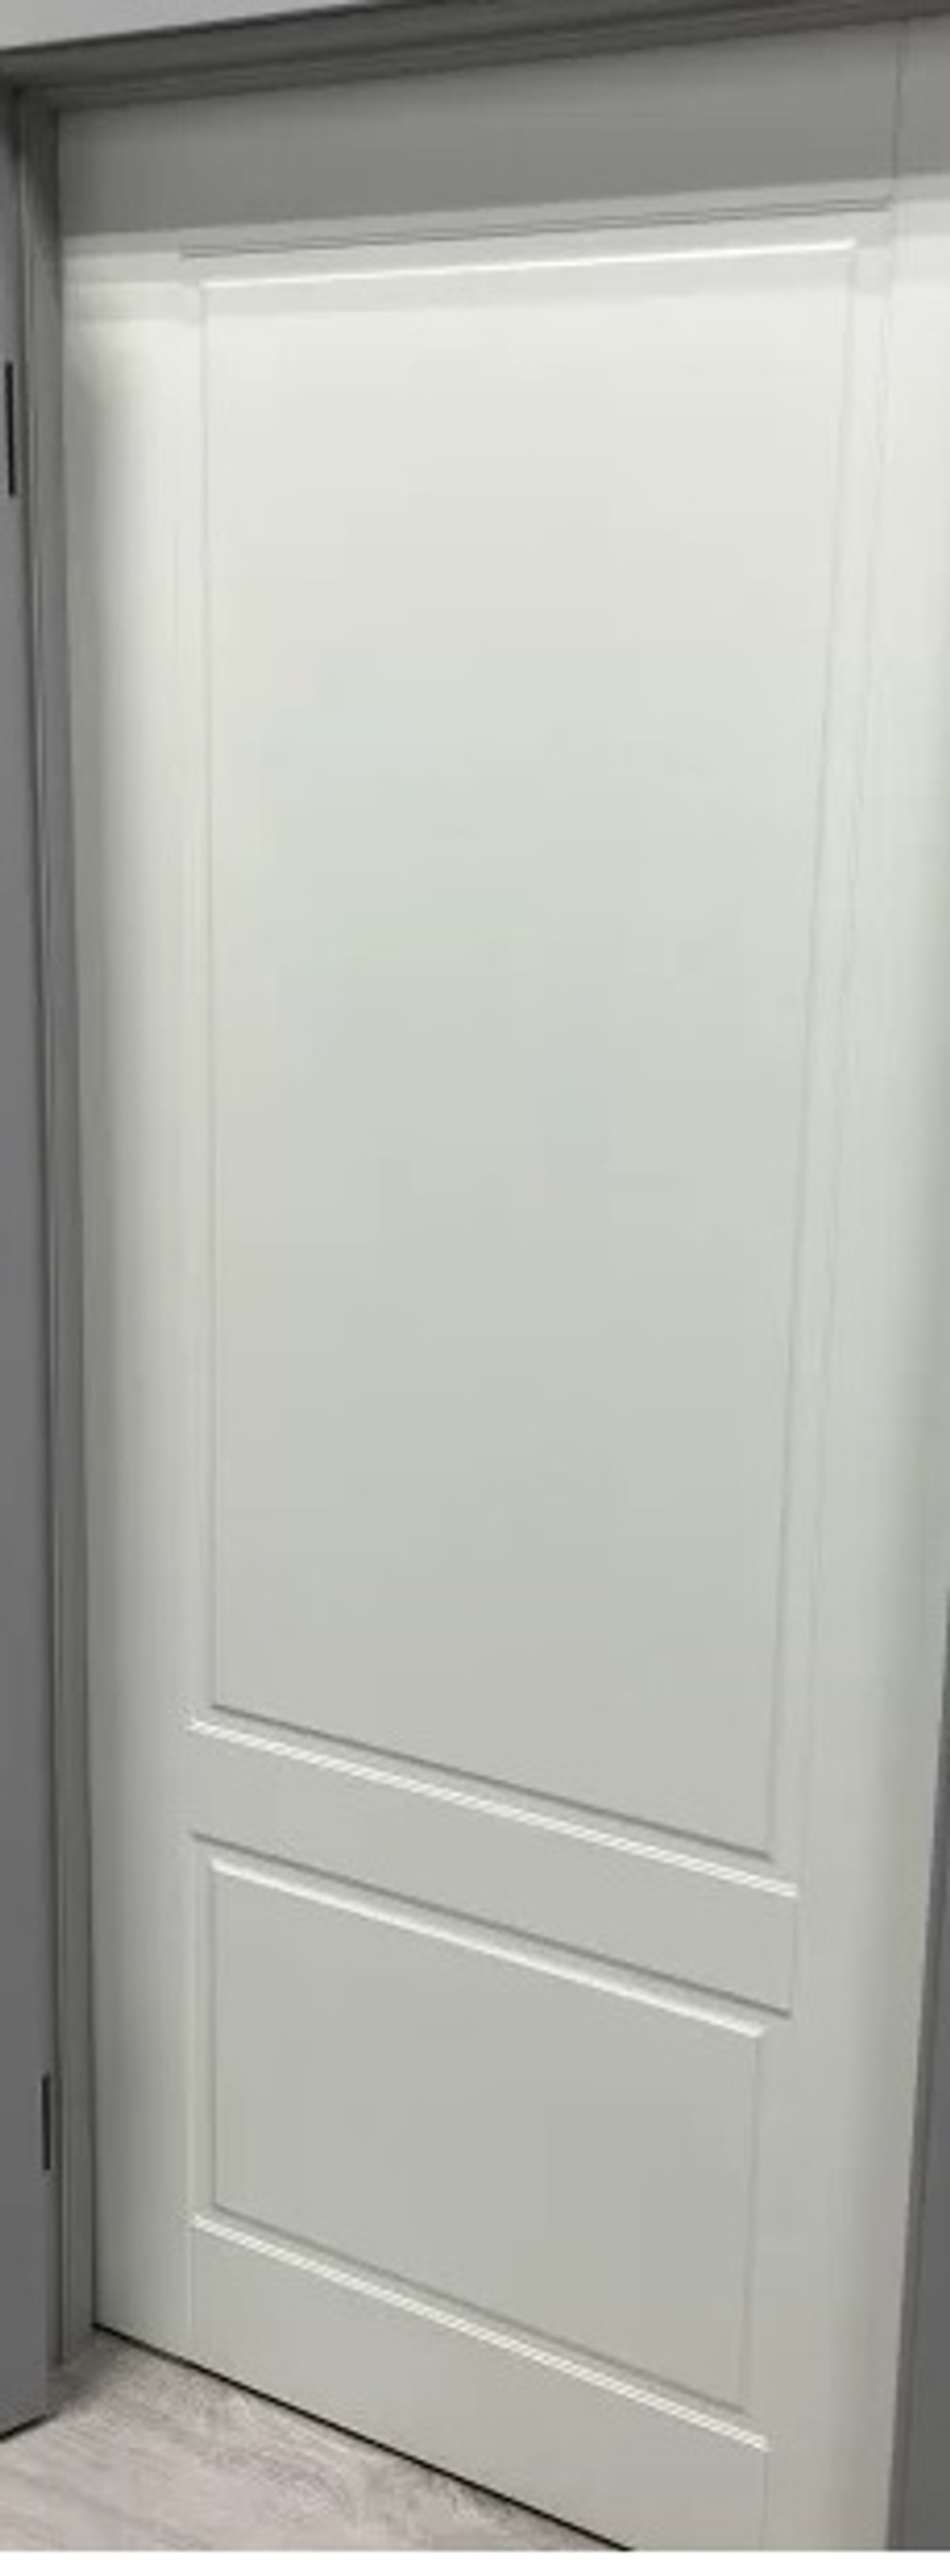 Межкомнатная дверь VFD (ВФД)  Sheffield (Шеффилд)  Polar (эмаль белая) ДГ